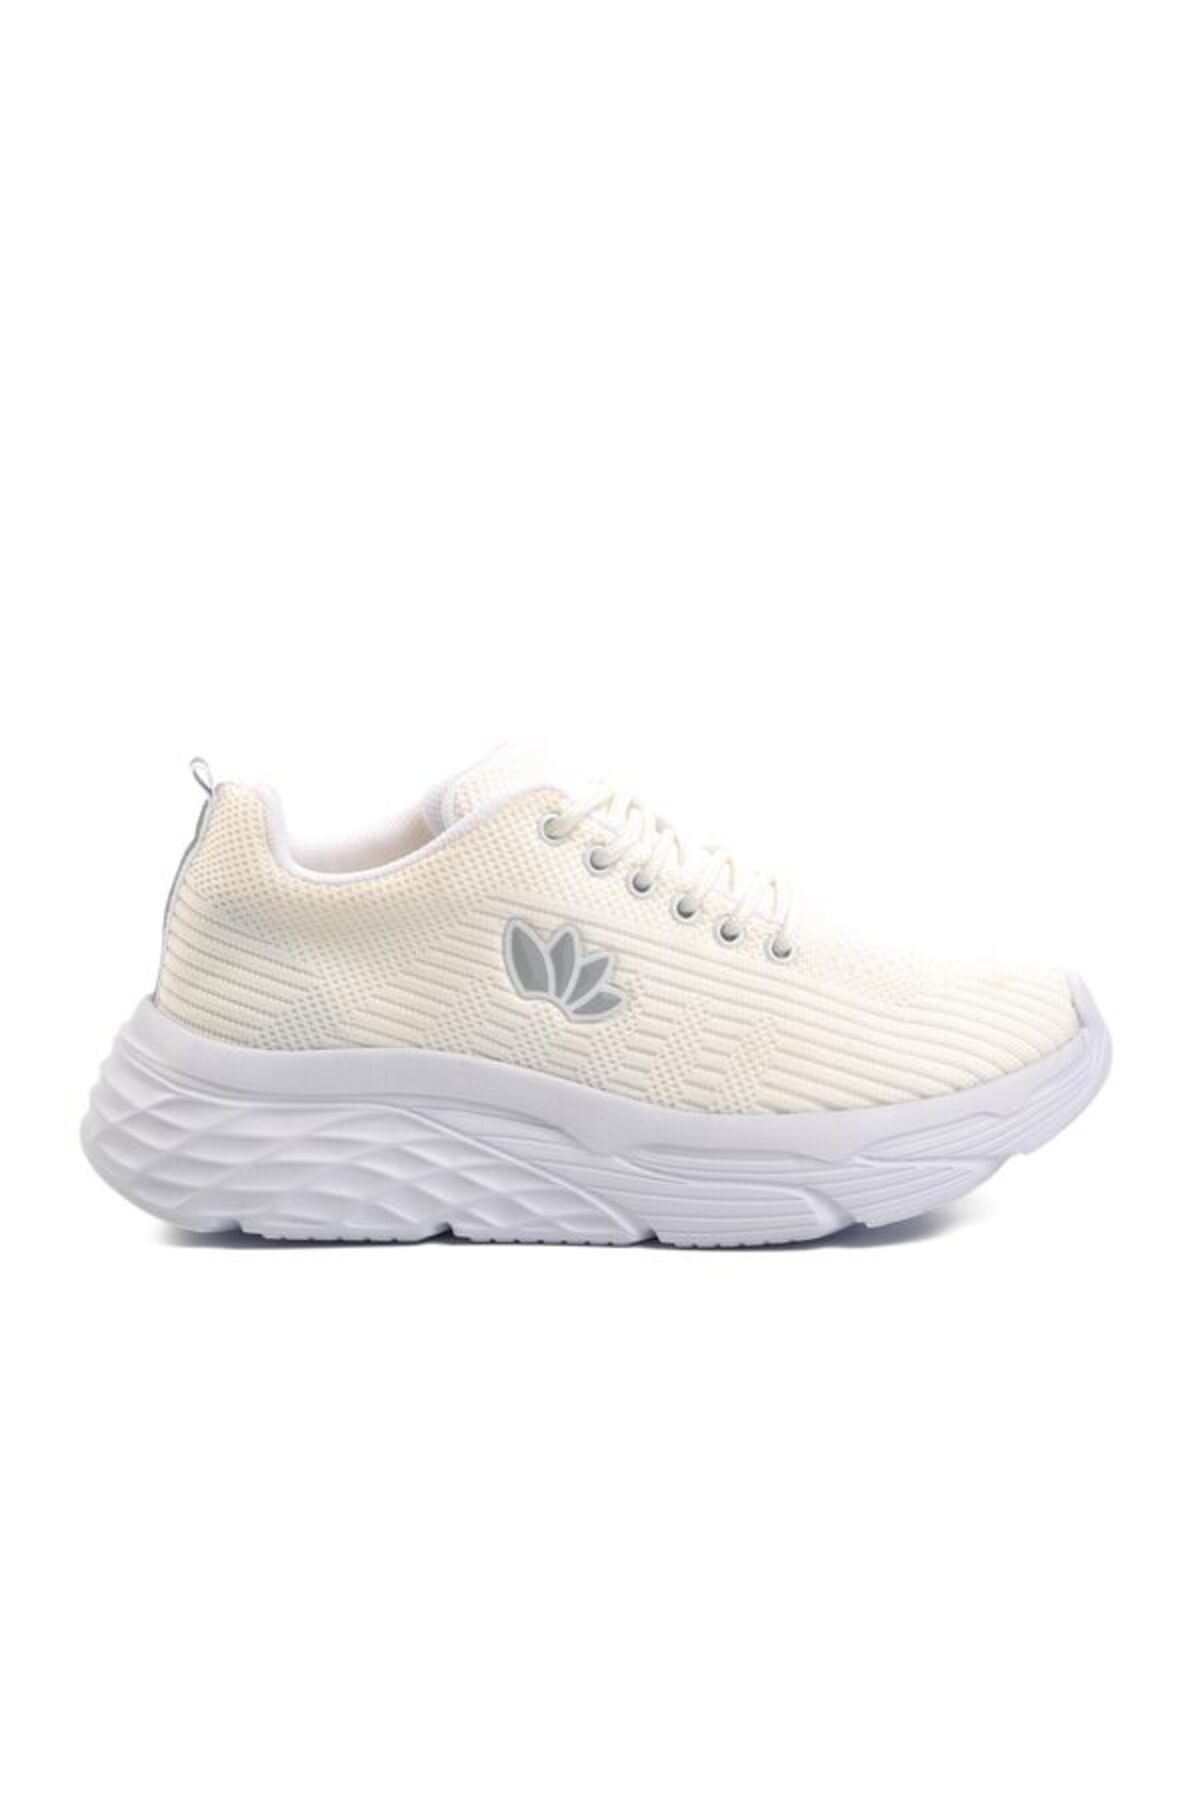 aspor Beyaz-beyaz Kadın Spor Ayakkabı